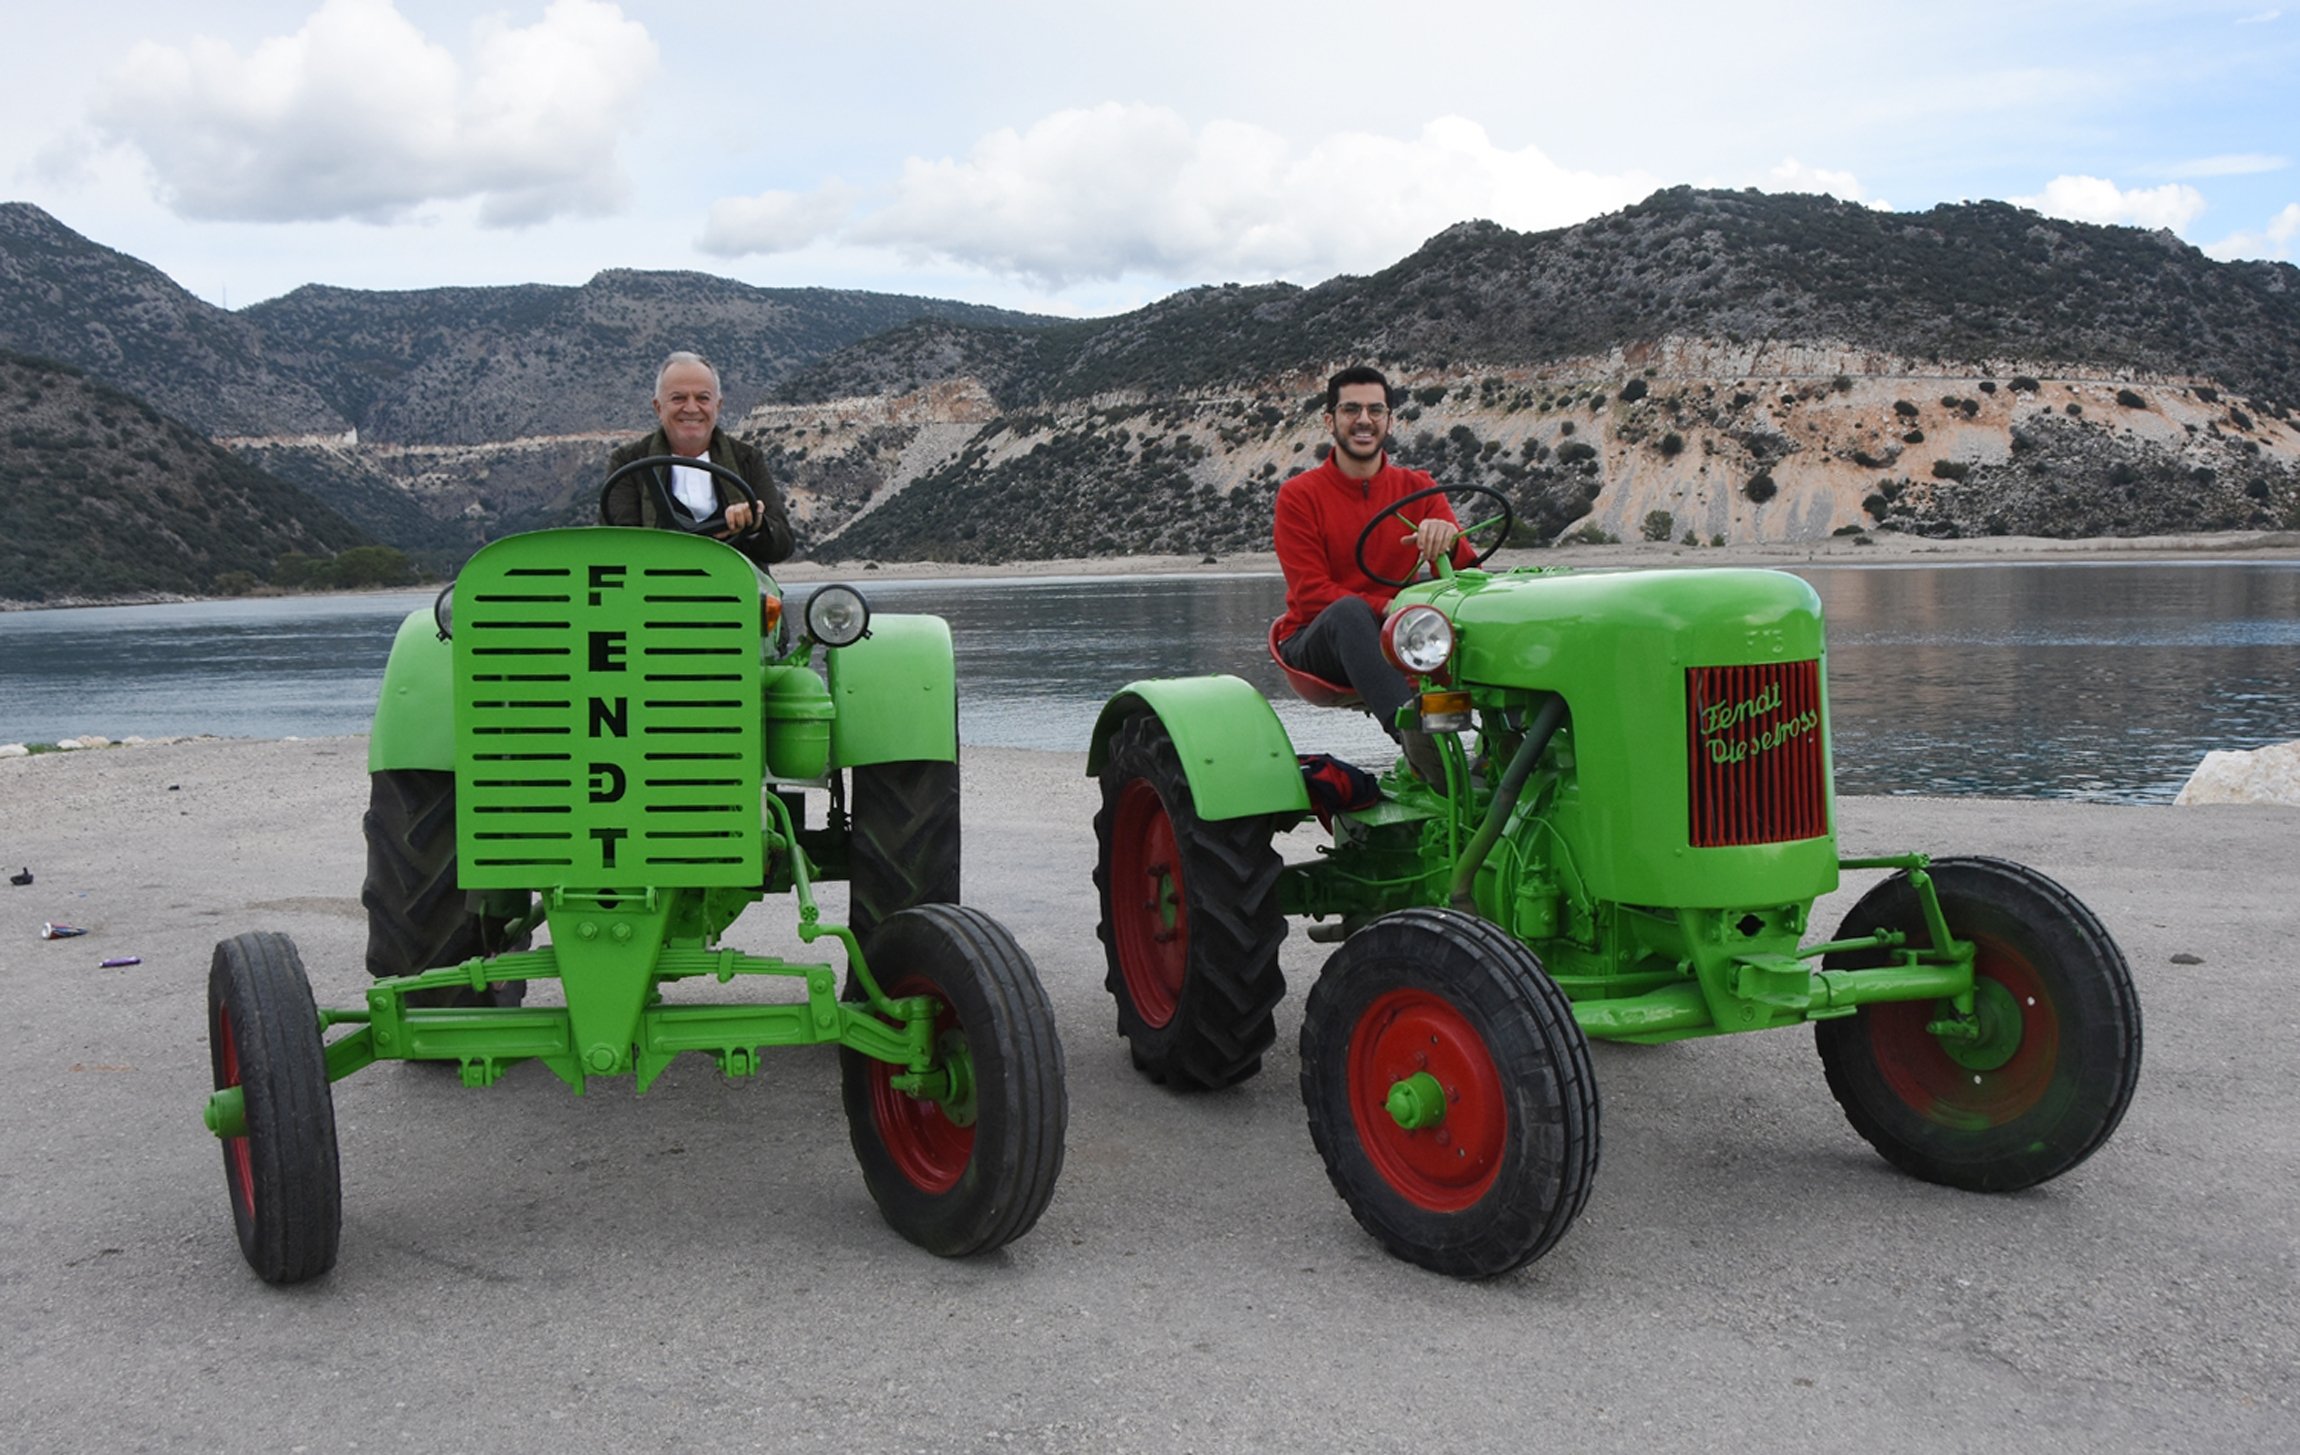 Mehmet Bayraktaroğlu dan putranya Hüseyin duduk di atas traktor merek Fendt Dieselross yang telah dipugar dan beroperasi sepenuhnya dari tahun 1952 dan 1950, Antalya, Turki selatan, 20 Desember 2021. (Foto DHA)